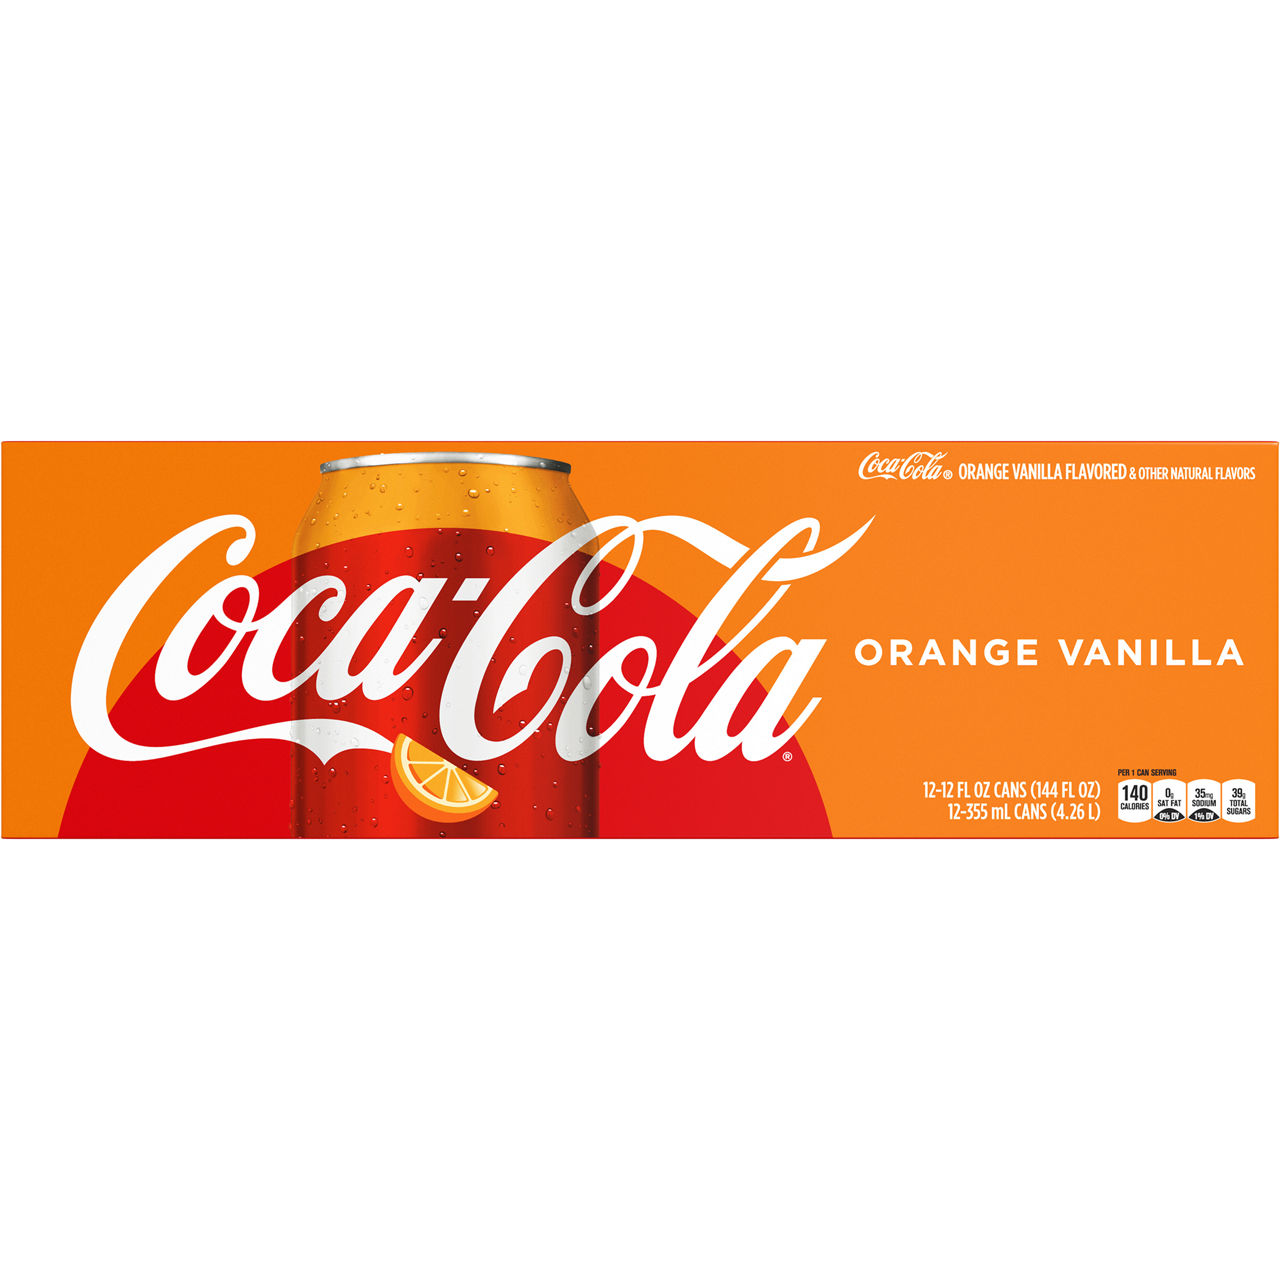 Orange + Vanilla